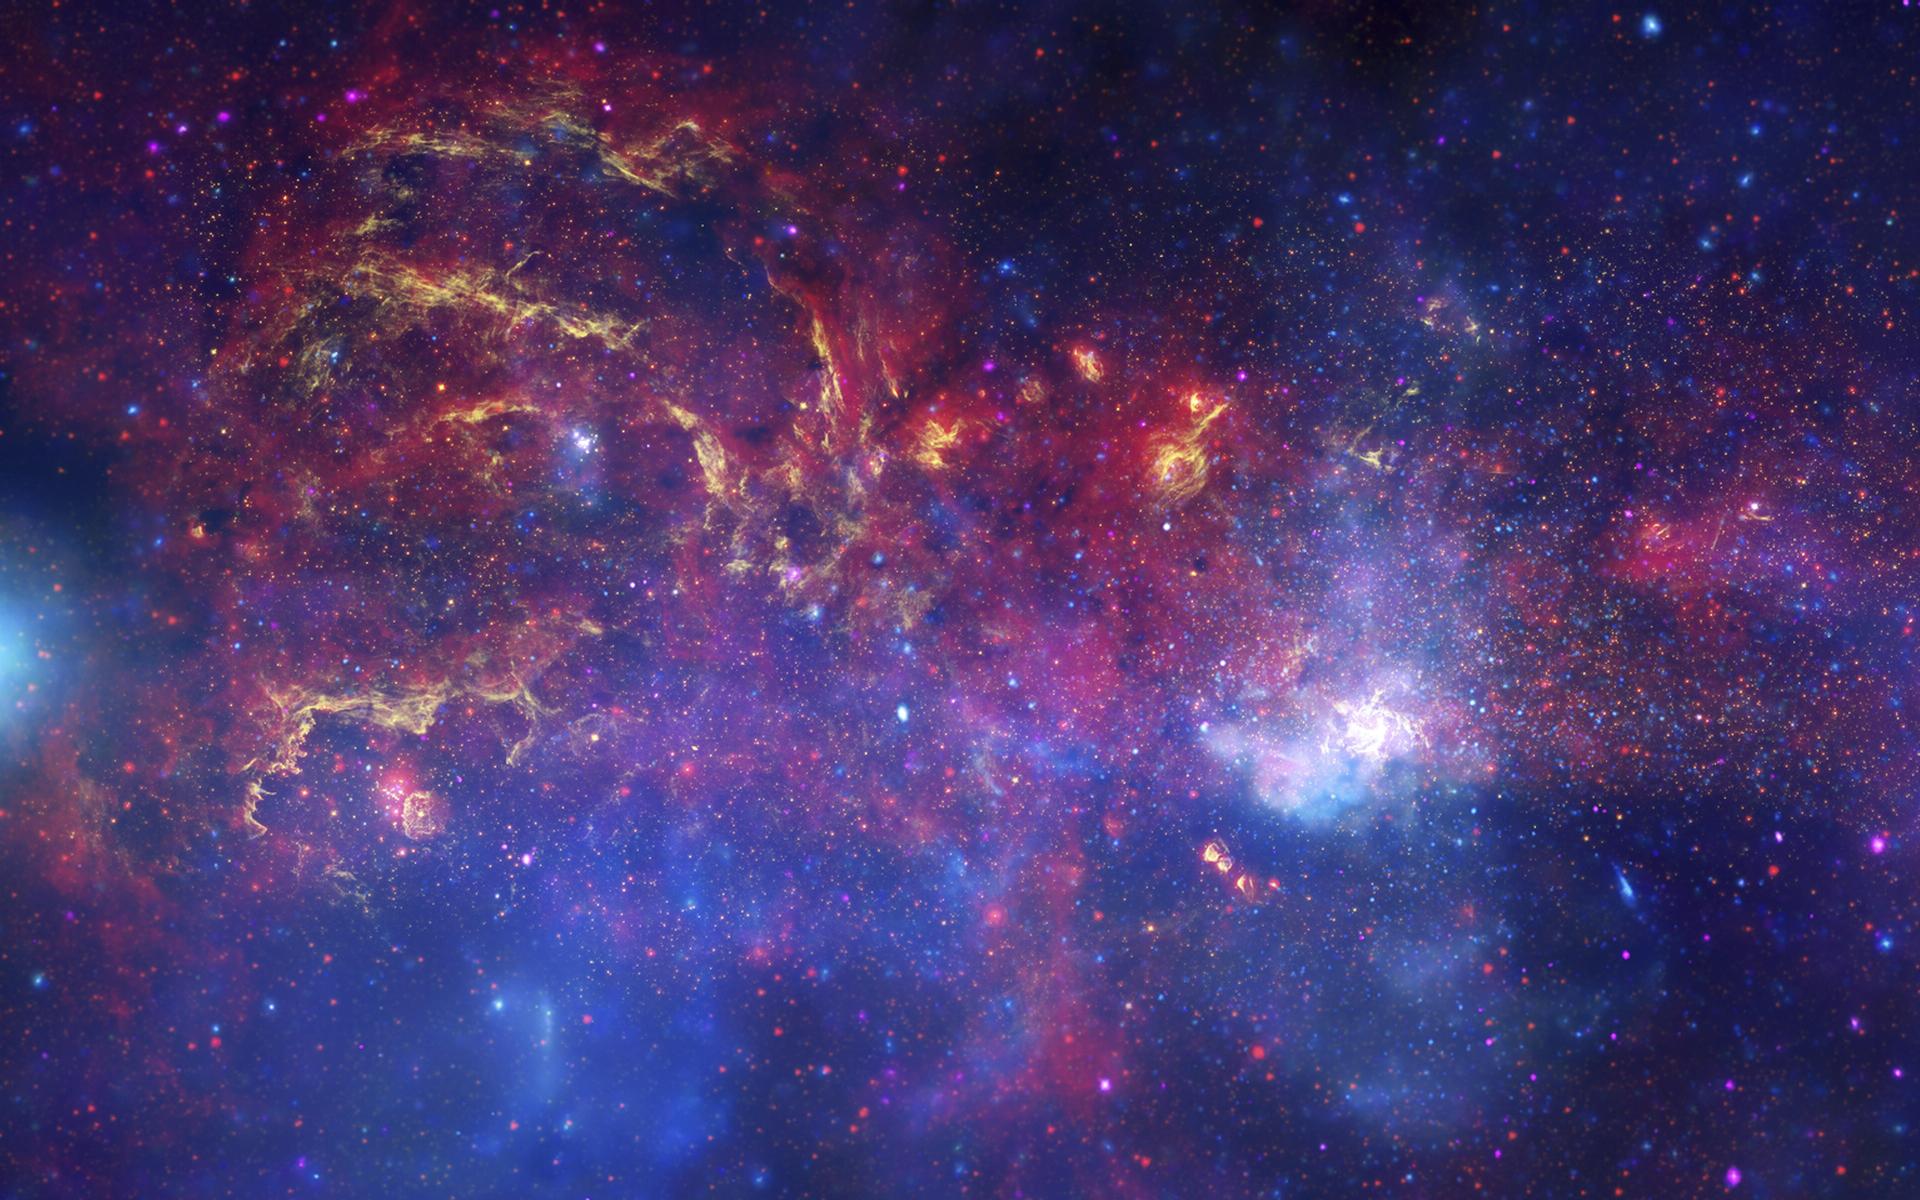 Hình nền không gian Đường Lactee (Milky Way): Bạn yêu thích không gian và muốn có một trải nghiệm lấy cảm hứng từ nó? Hình nền không gian Đường Lactee có cùng những ngôi sao và huyền ảo của Đường Lactee sẽ tạo ra một trải nghiệm chưa từng có. Hãy tận hưởng ngay bây giờ và tận hưởng cảm giác dễ chịu khi trang web hoặc máy tính của bạn bắt đầu đón nhận không gian đầy mê hoặc này.